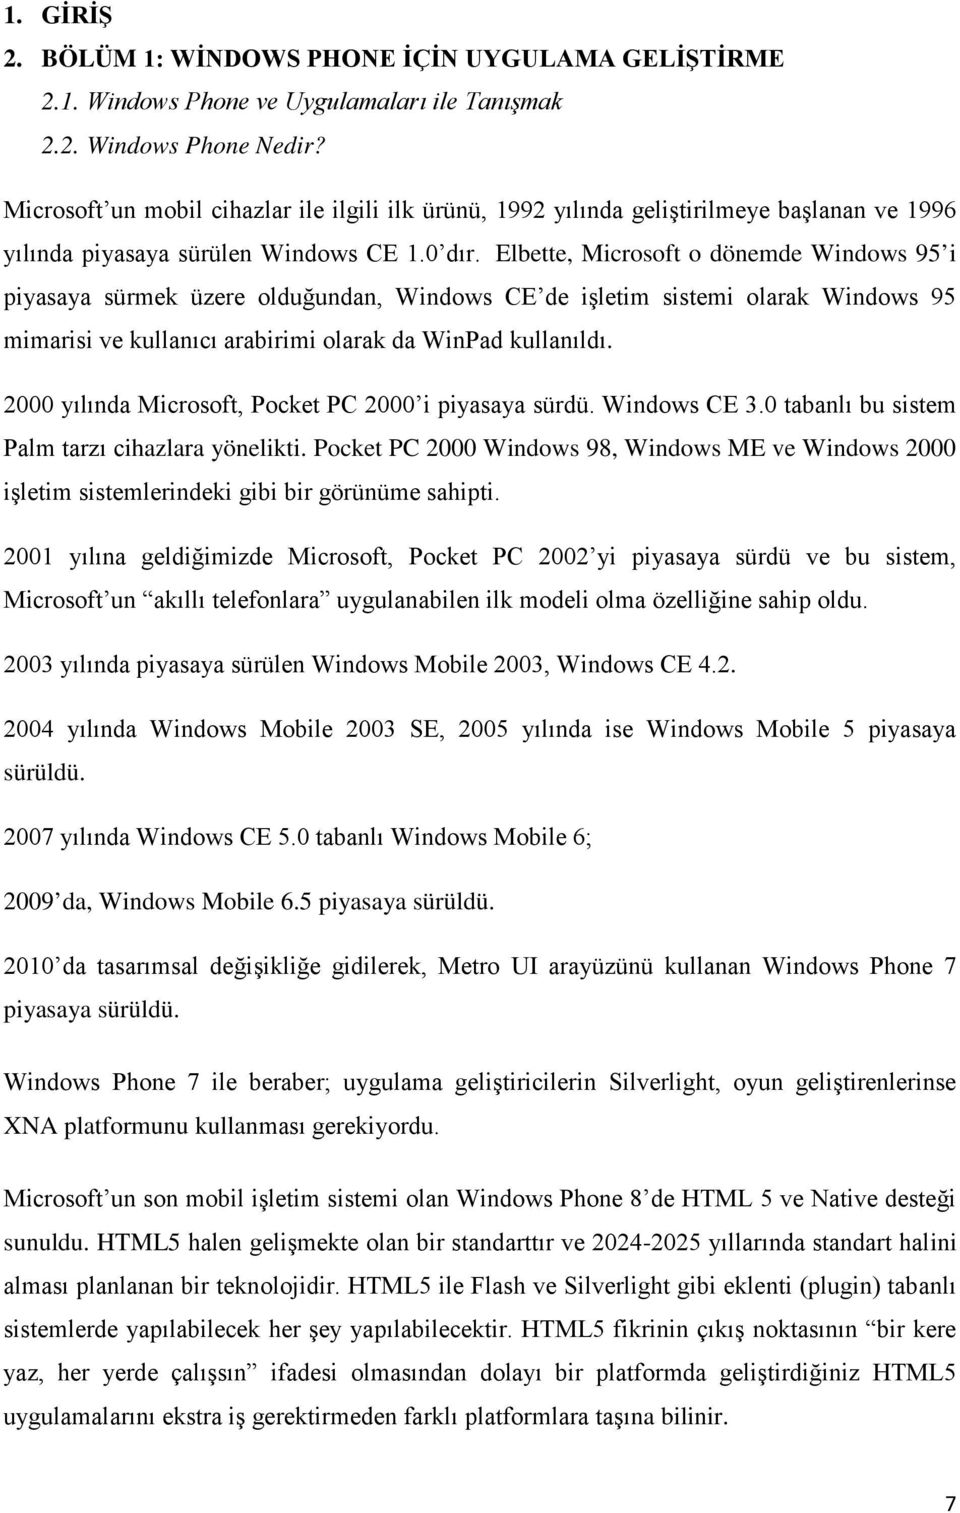 Elbette, Microsoft o dönemde Windows 95 i piyasaya sürmek üzere olduğundan, Windows CE de işletim sistemi olarak Windows 95 mimarisi ve kullanıcı arabirimi olarak da WinPad kullanıldı.